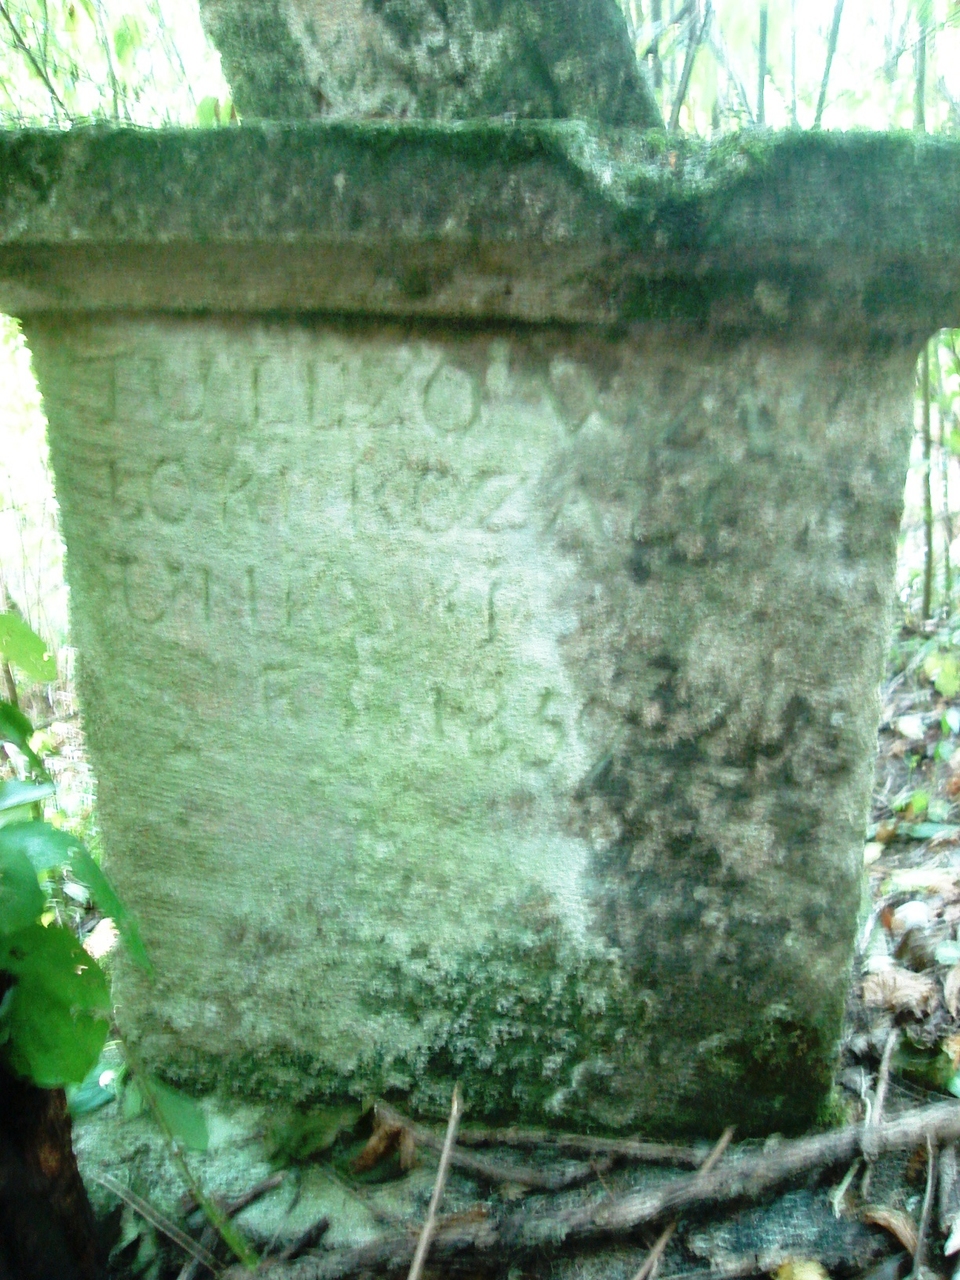 Tombstone of Rozalia Unioski, Czerwonogrod cemetery, state from 2005